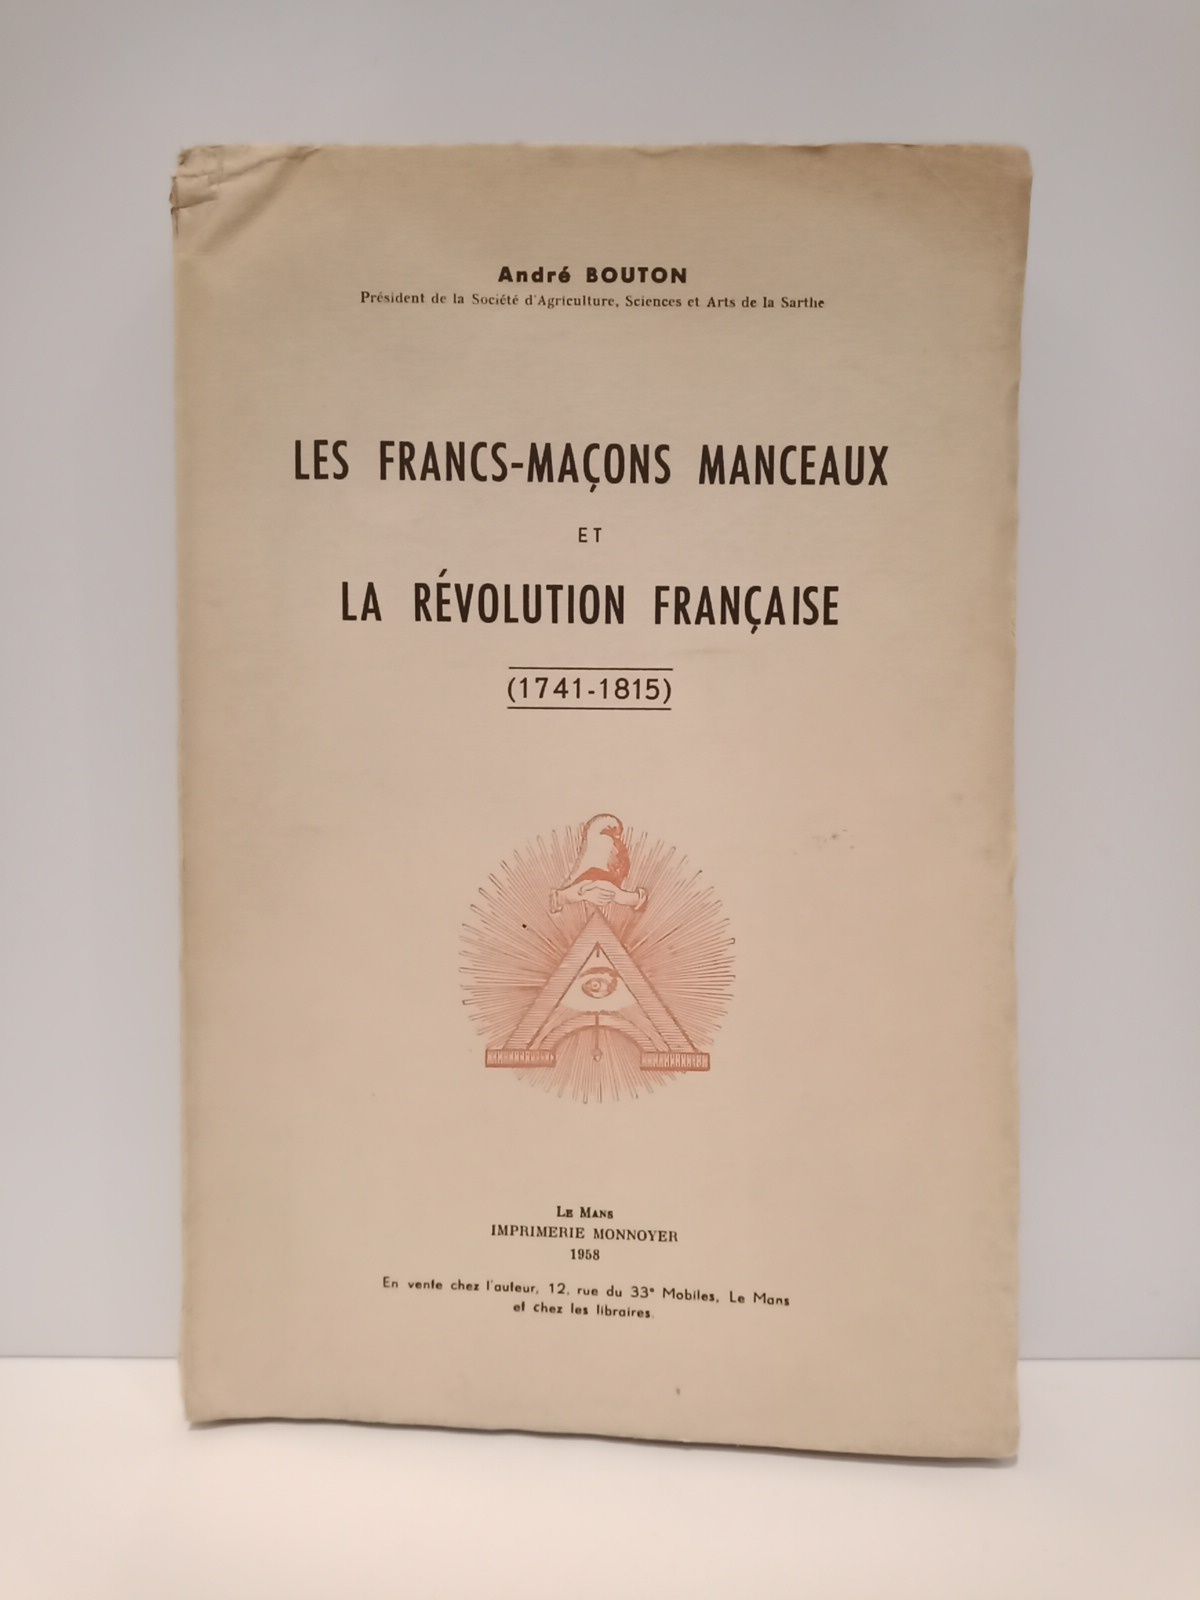 BOUTON, Andr - Les francs-maons manceaux et la Rvolution Franaise (1741-1815)